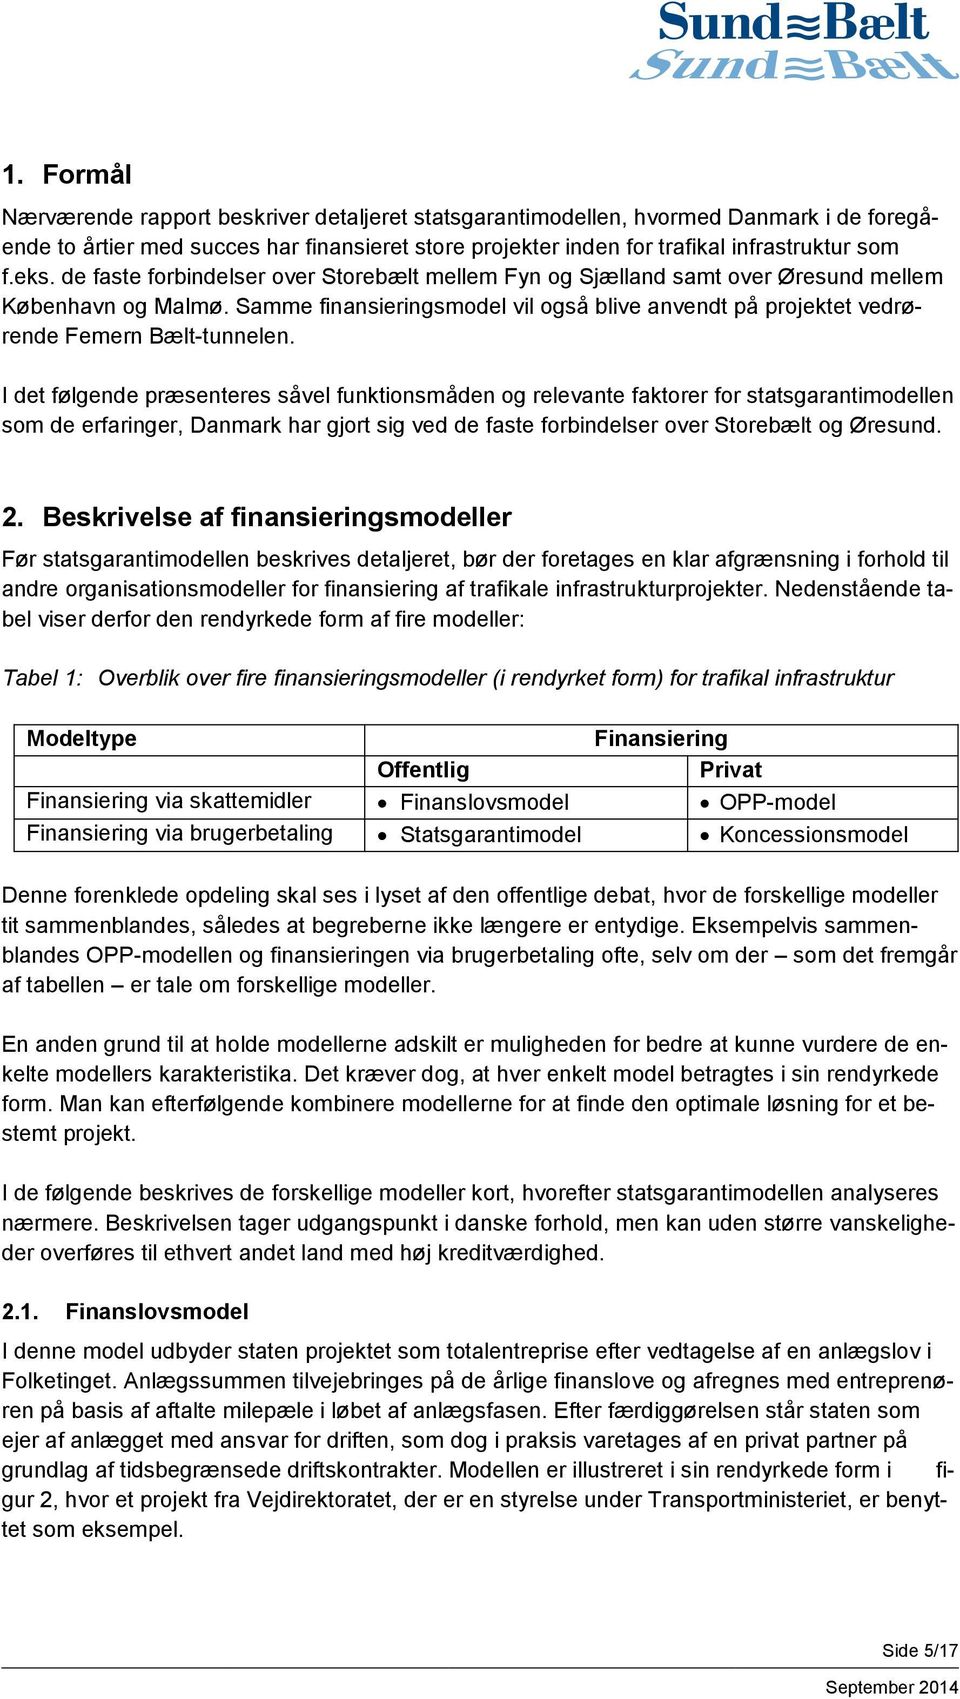 I det følgende præsenteres såvel funktionsmåden og relevante faktorer for statsgarantimodellen som de erfaringer, Danmark har gjort sig ved de faste forbindelser over Storebælt og Øresund. 2.